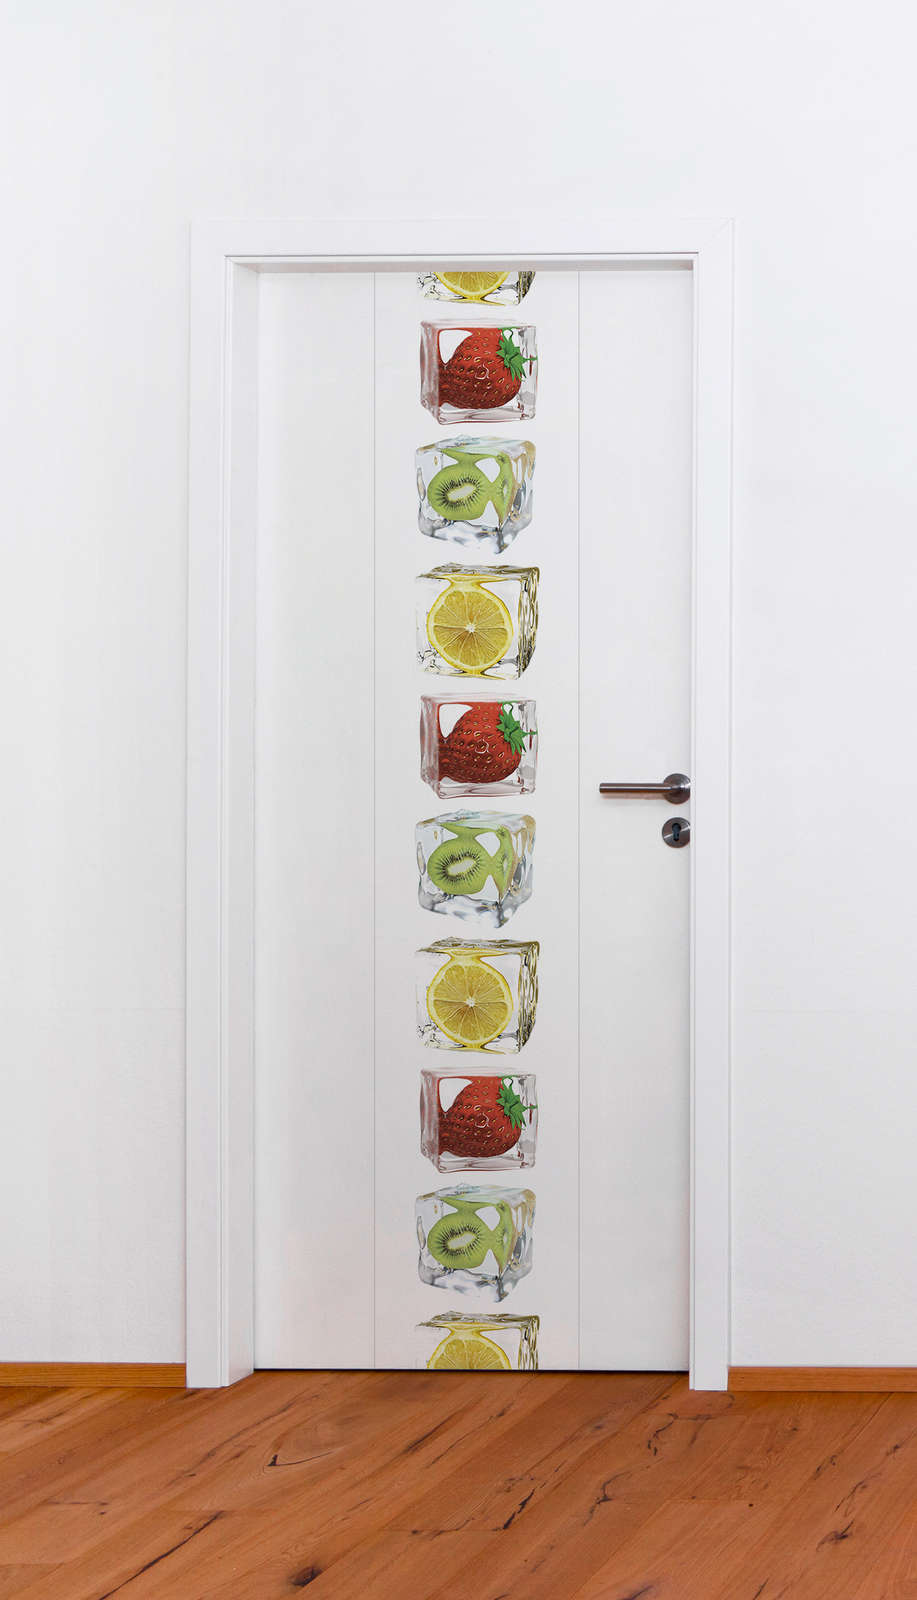             Papel pintado de cocina con frutas en colores vivos - colorido, blanco, amarillo, rojo
        